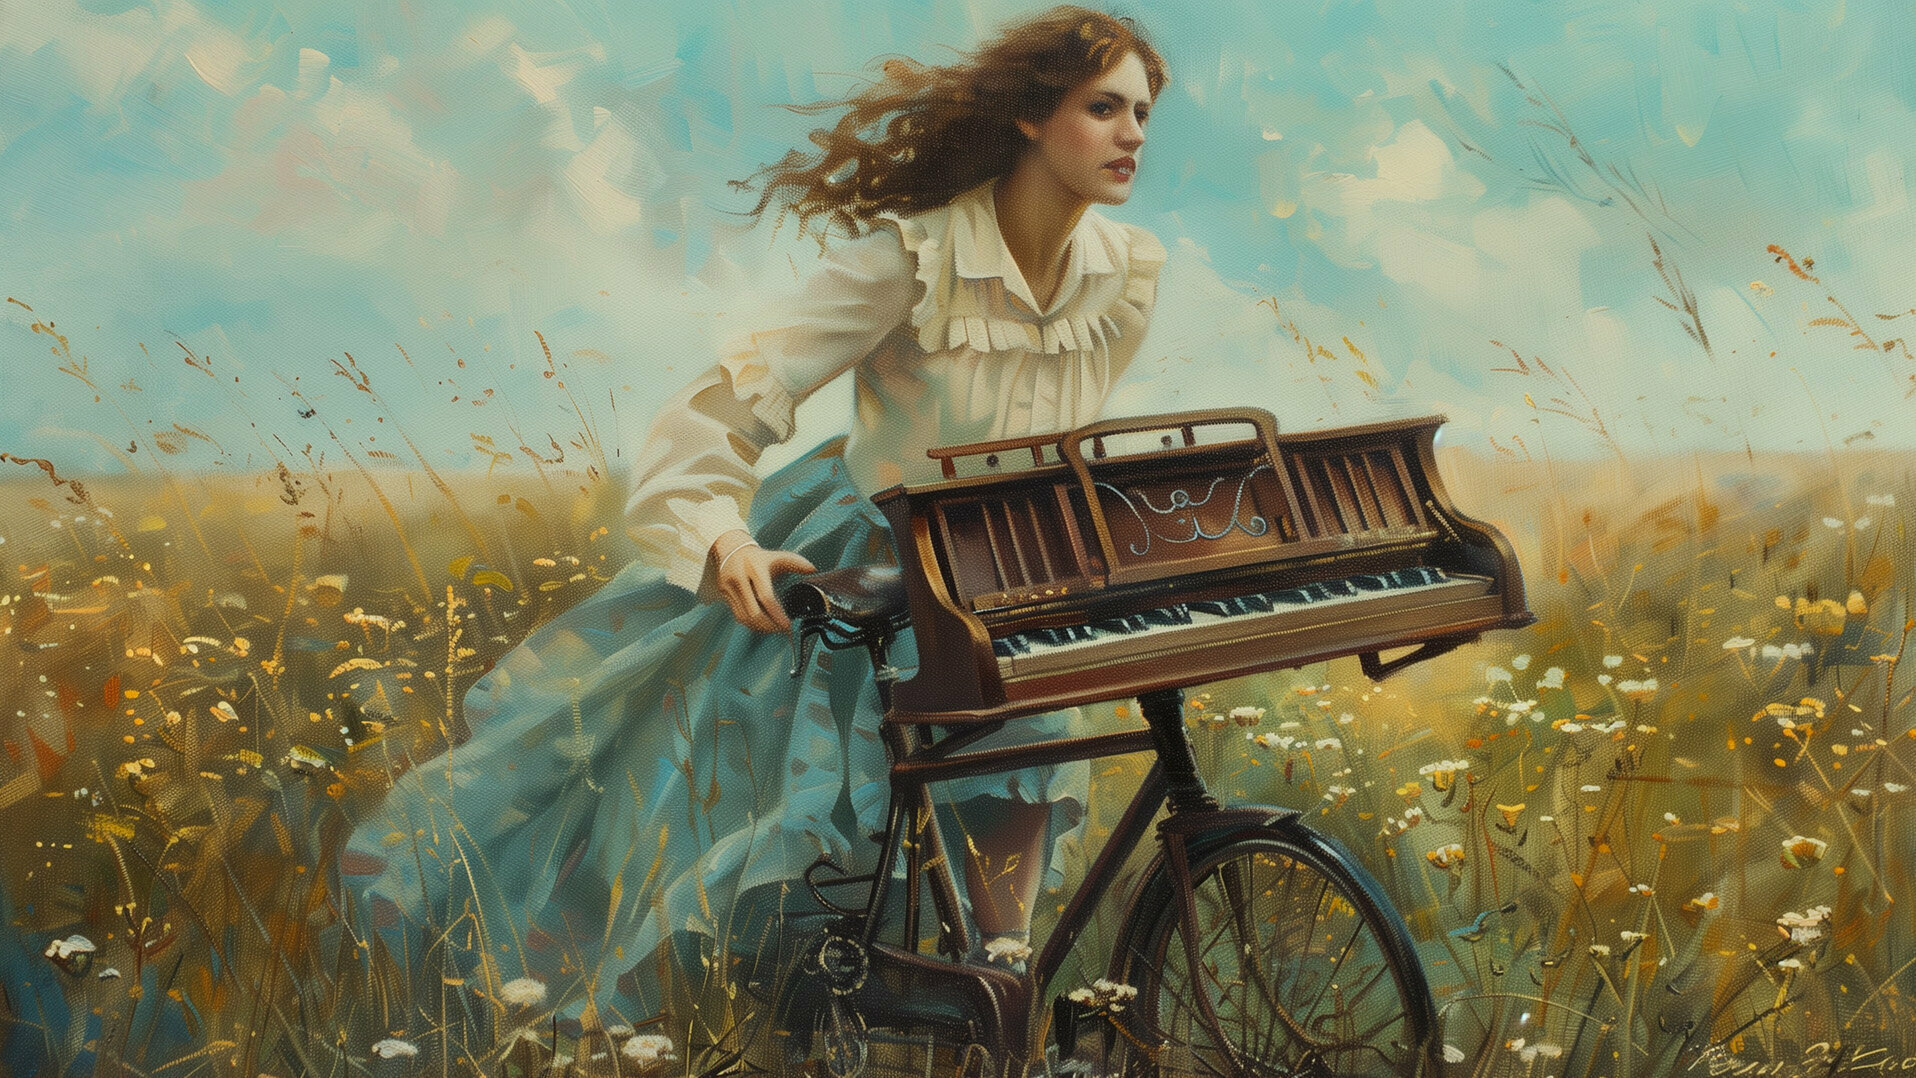 Eine junge Frau radelt mit einem Klavier auf dem Fahrrad durch ein Feld